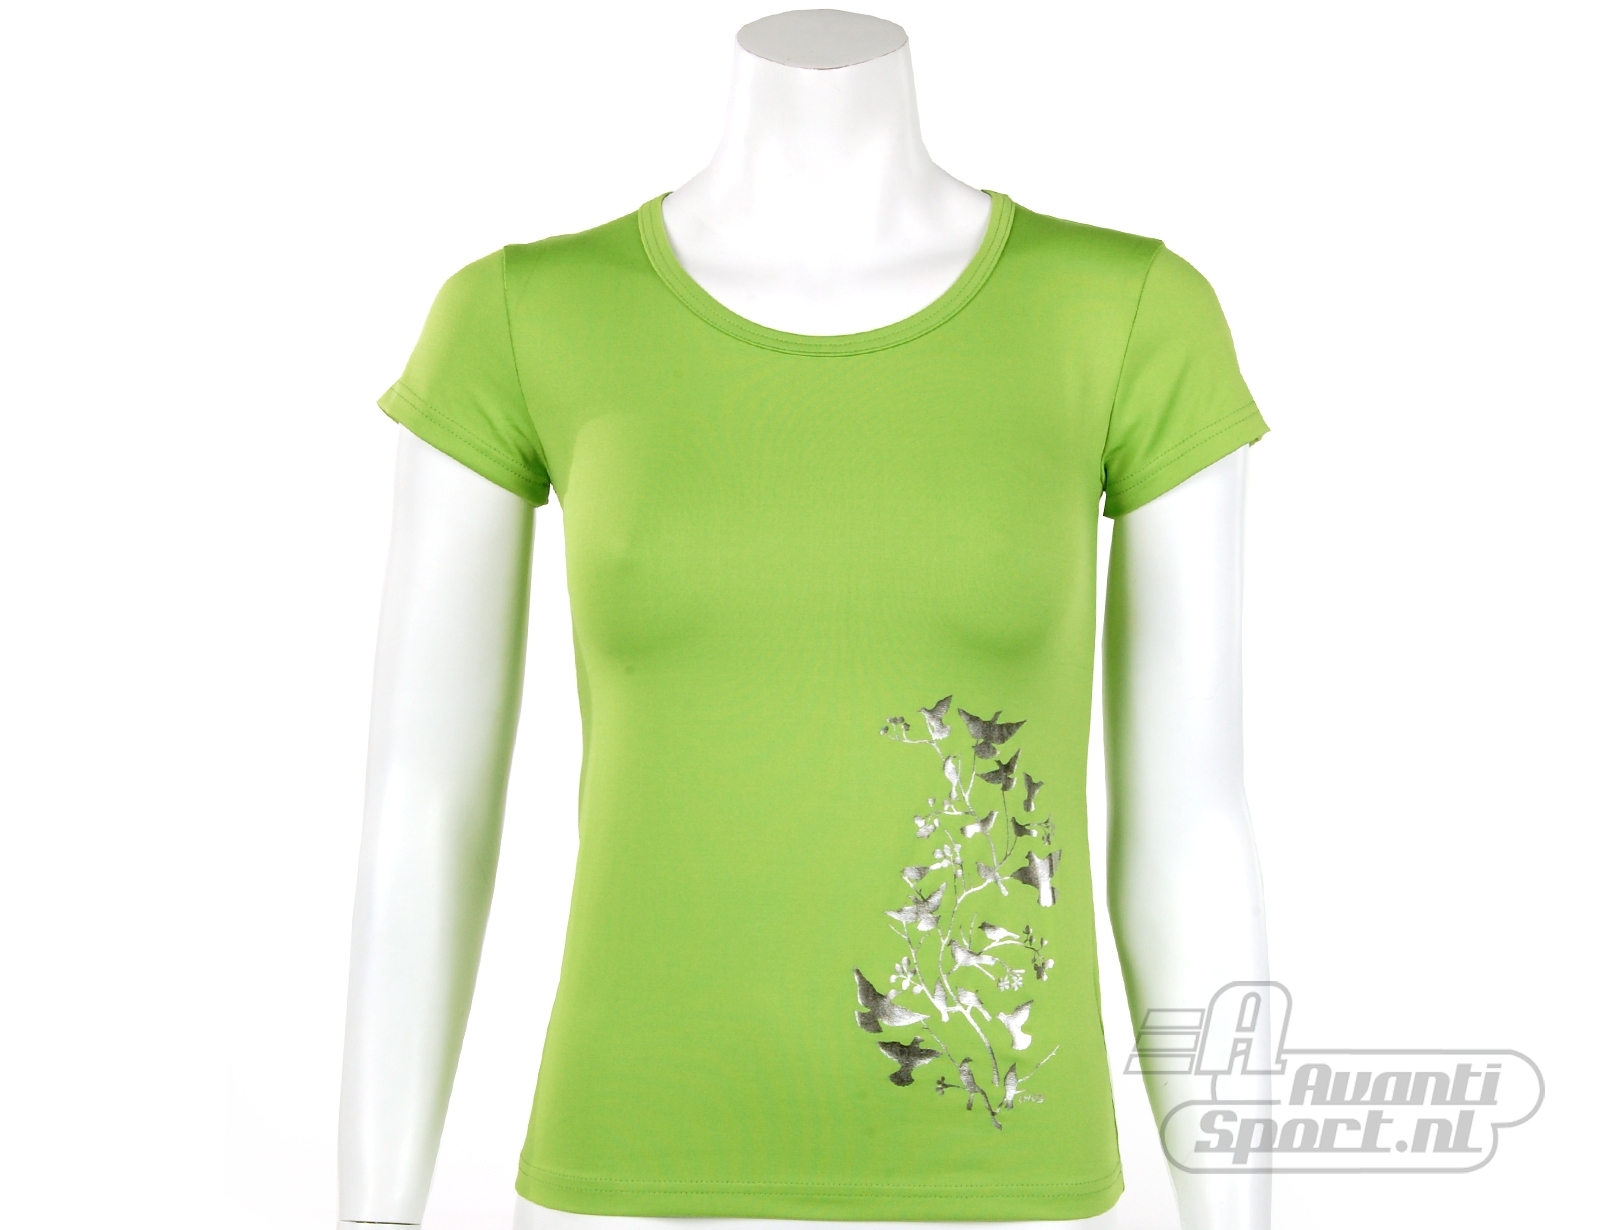 Avantisport - Cavello - Women's Tee Run - Parrot Green